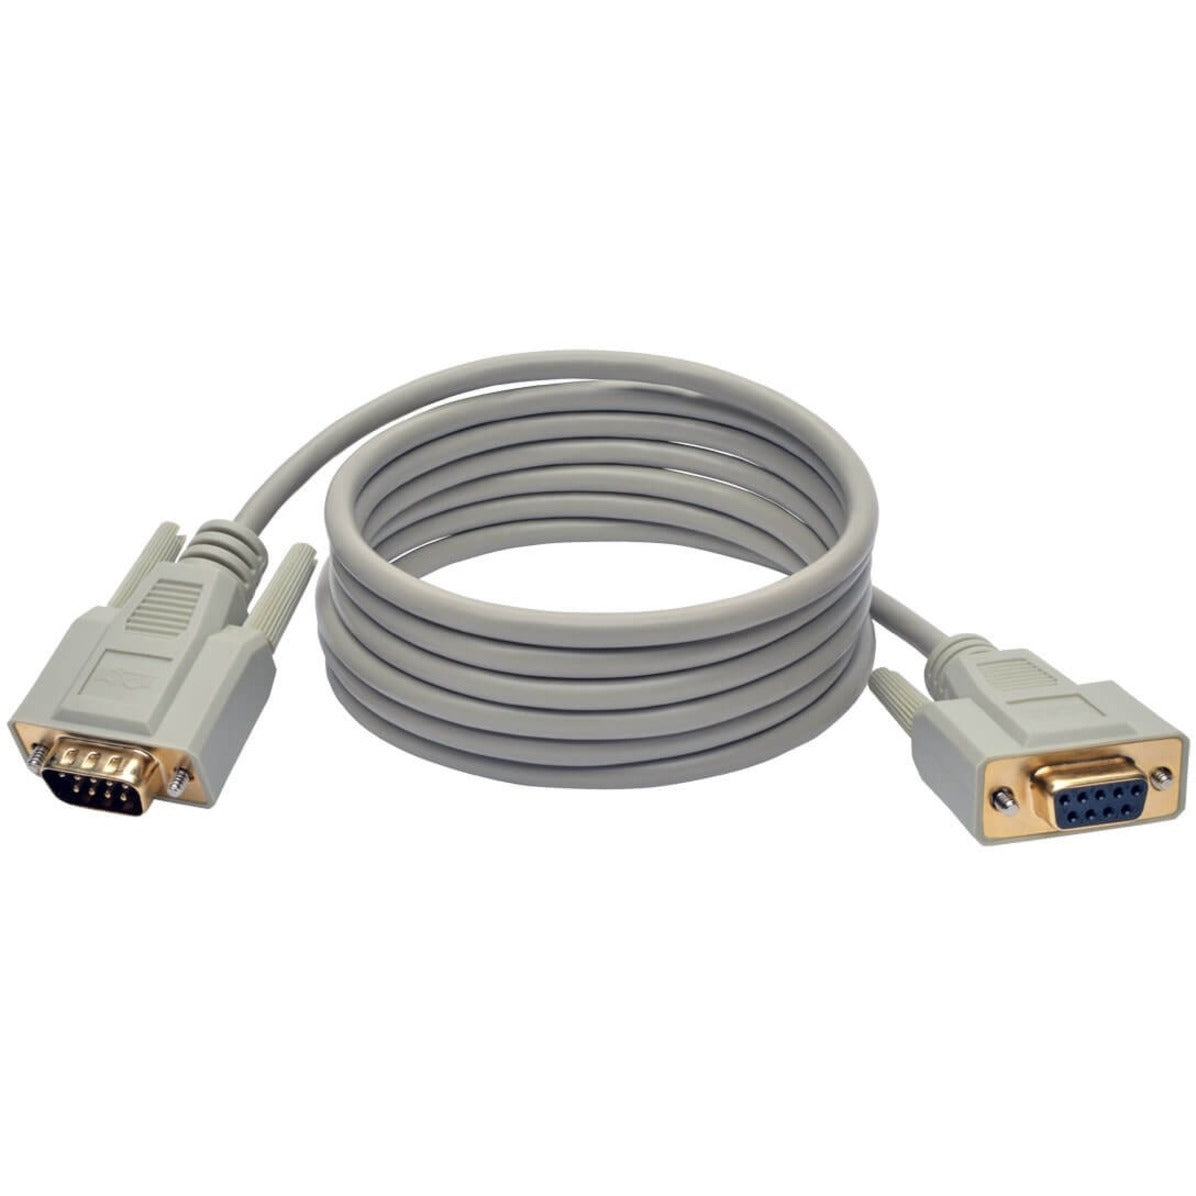 Tripp Lite - トリップ ライト P520-006 CGA/EGA Extension Cable - P520-006 CGA/EGA エクステンションケーブル、6 フィート、銅コンダクタ